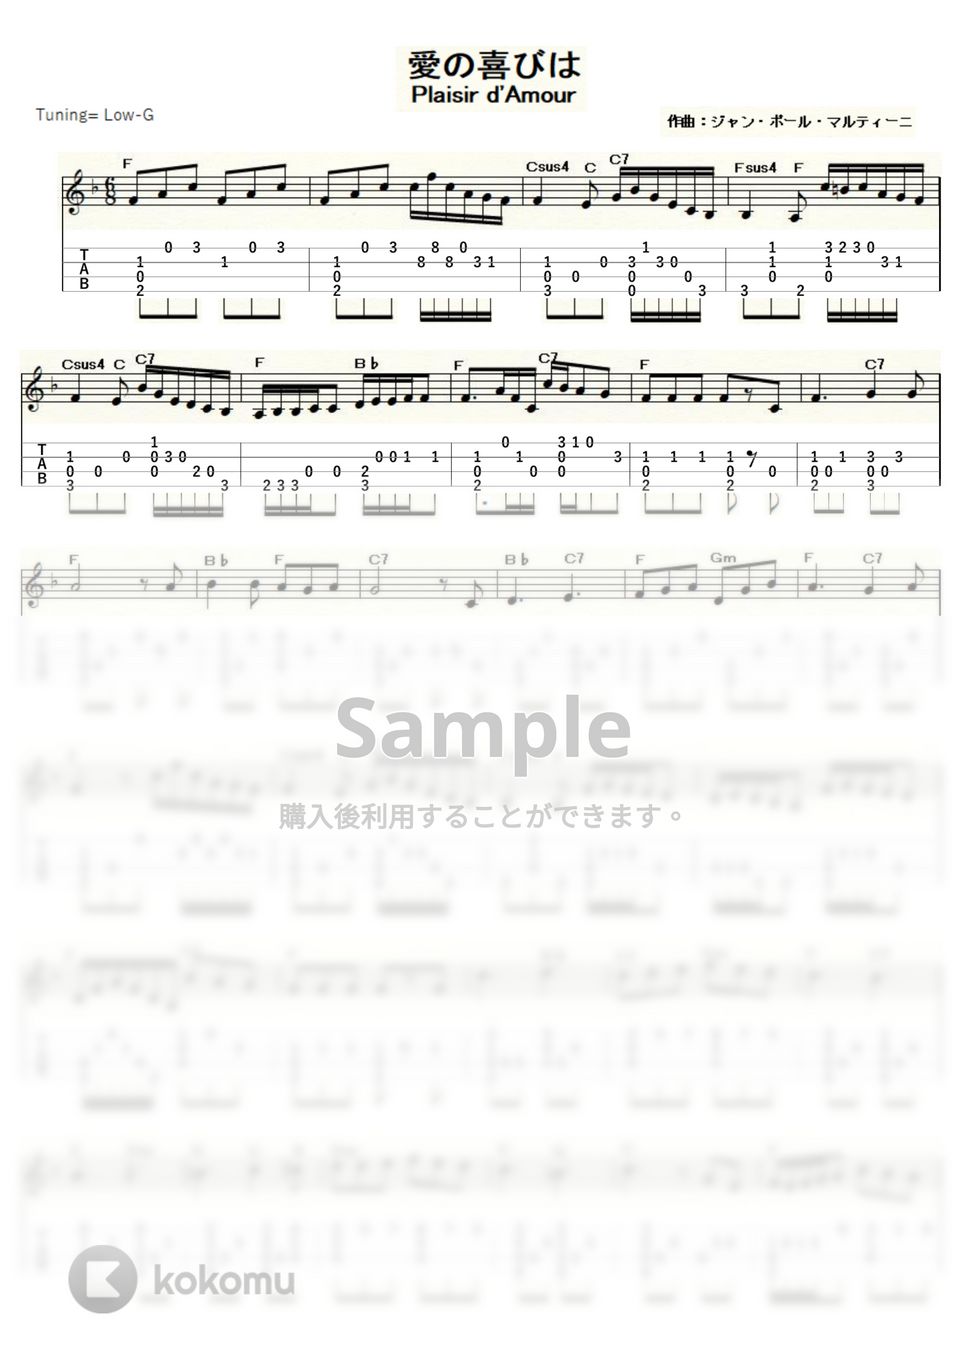 マルティーニ - 愛の喜びは (ｳｸﾚﾚｿﾛ / Low-G / 中級) by ukulelepapa